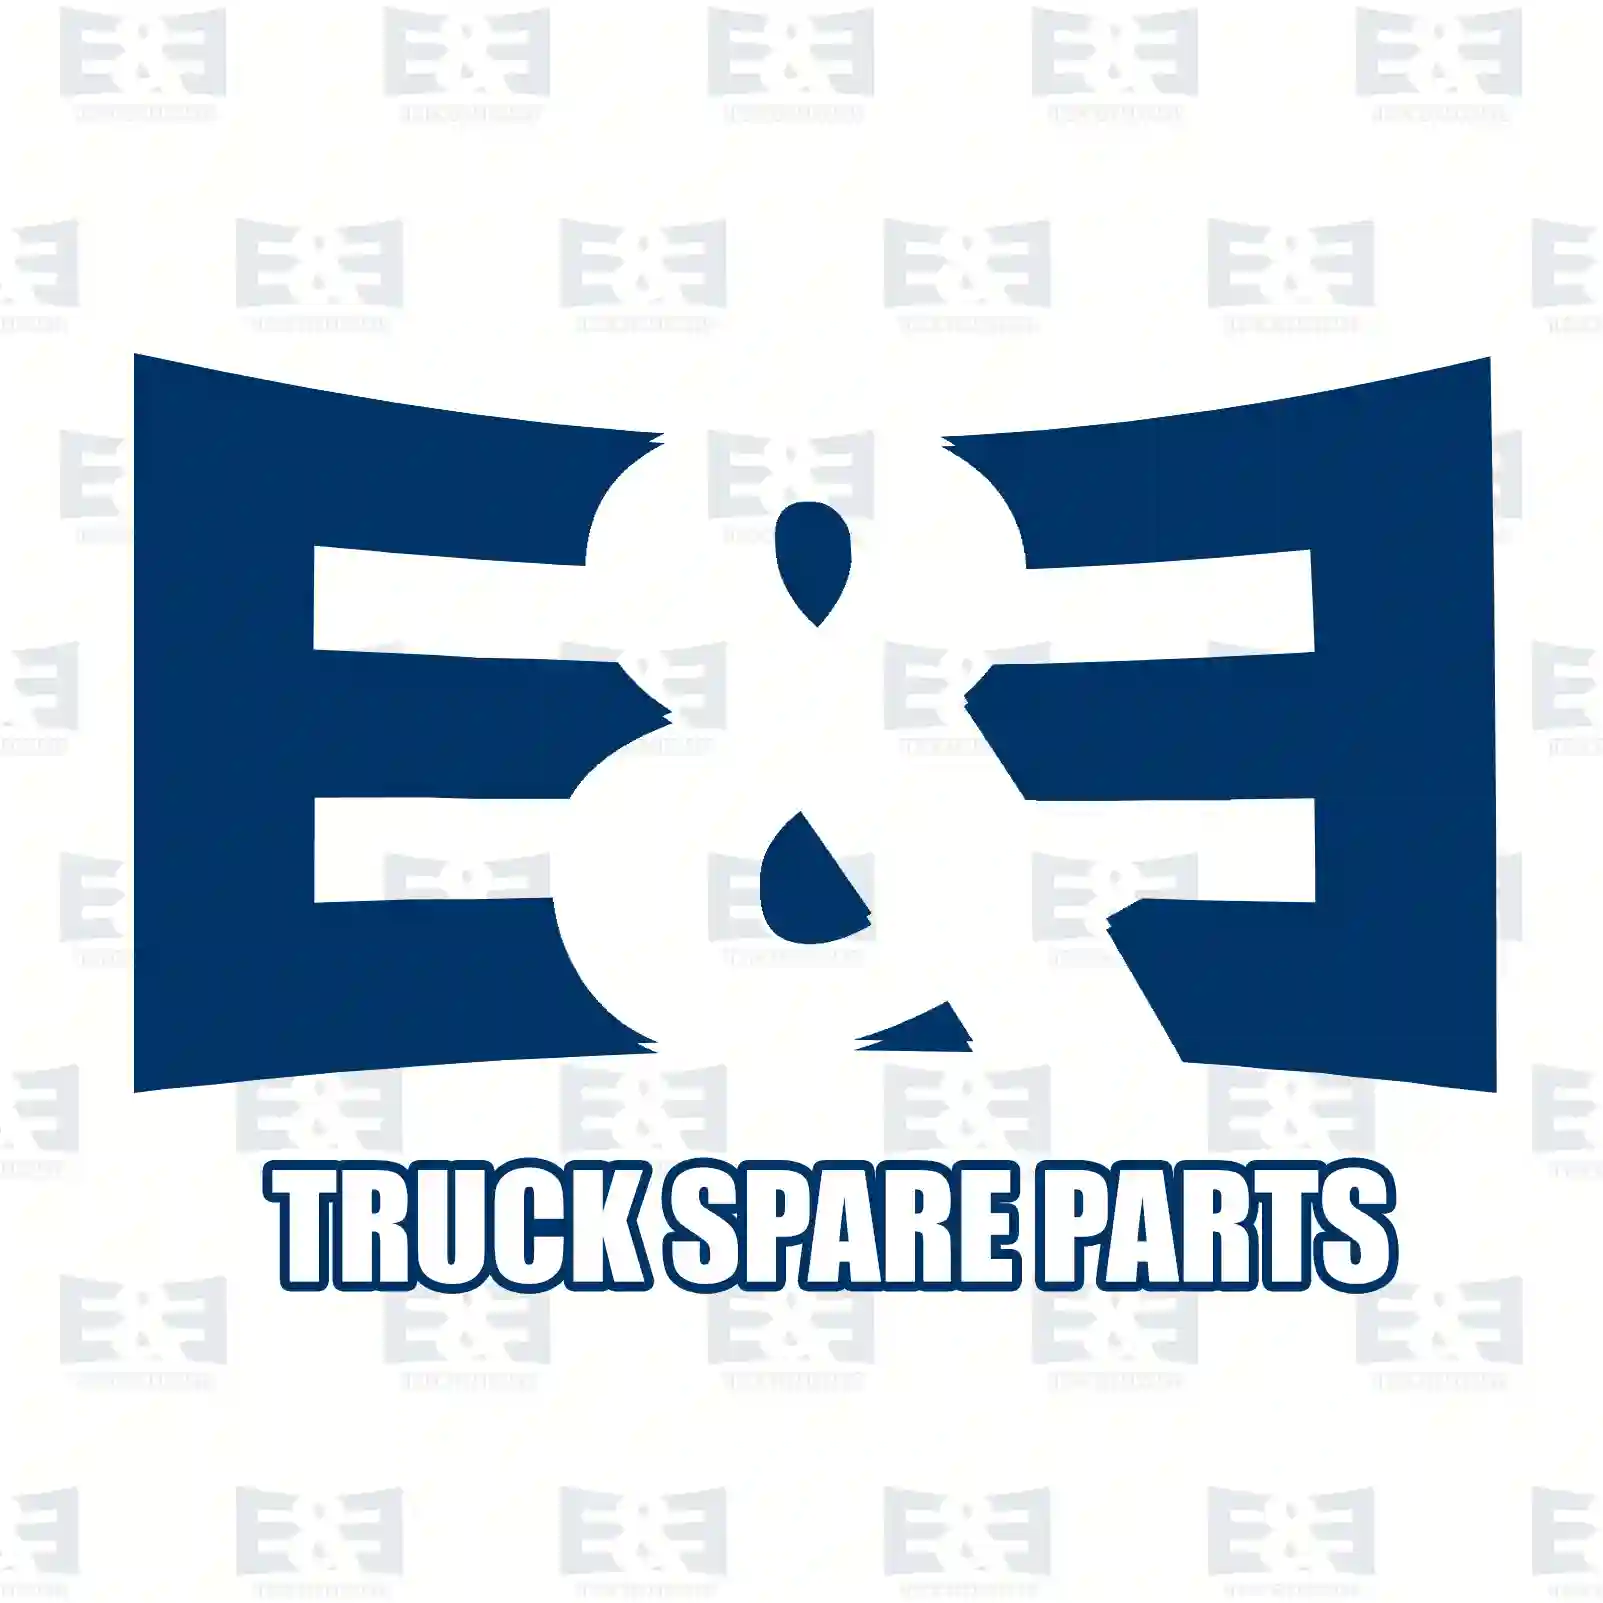 Clutch disc, 2E2289256, 08598873, 98481323, 98481328, 08598873, 8598873, 98401893, 98419240, 98481323, 98481325, 98481328, 98490360, 98496859, 99433586 ||  2E2289256 E&E Truck Spare Parts | Truck Spare Parts, Auotomotive Spare Parts Clutch disc, 2E2289256, 08598873, 98481323, 98481328, 08598873, 8598873, 98401893, 98419240, 98481323, 98481325, 98481328, 98490360, 98496859, 99433586 ||  2E2289256 E&E Truck Spare Parts | Truck Spare Parts, Auotomotive Spare Parts